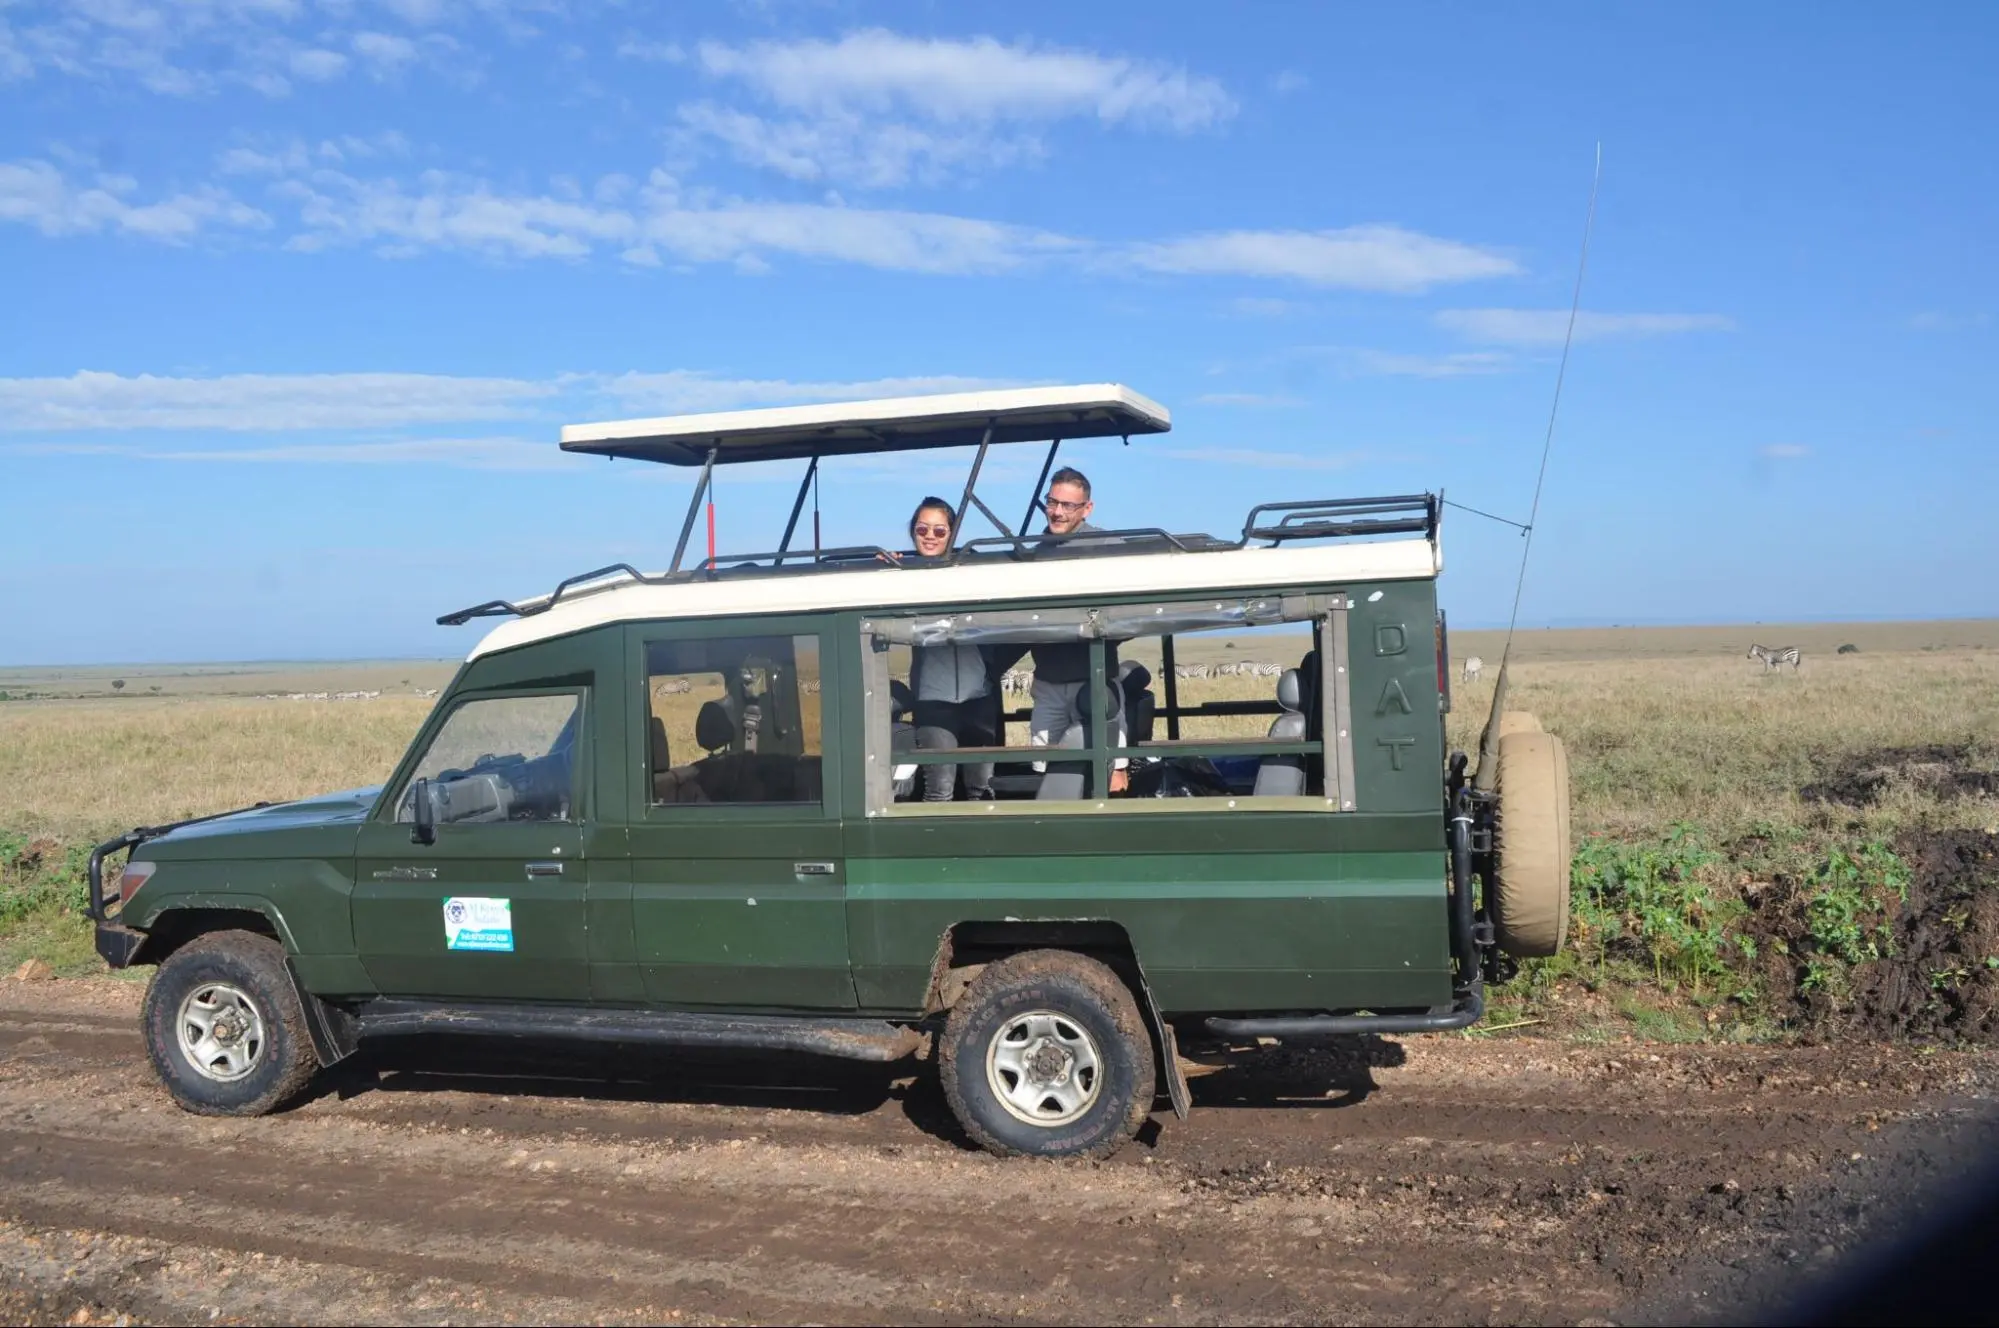 Masai Mara Honeymoon Safari - A couple on a safari in Masai Mara